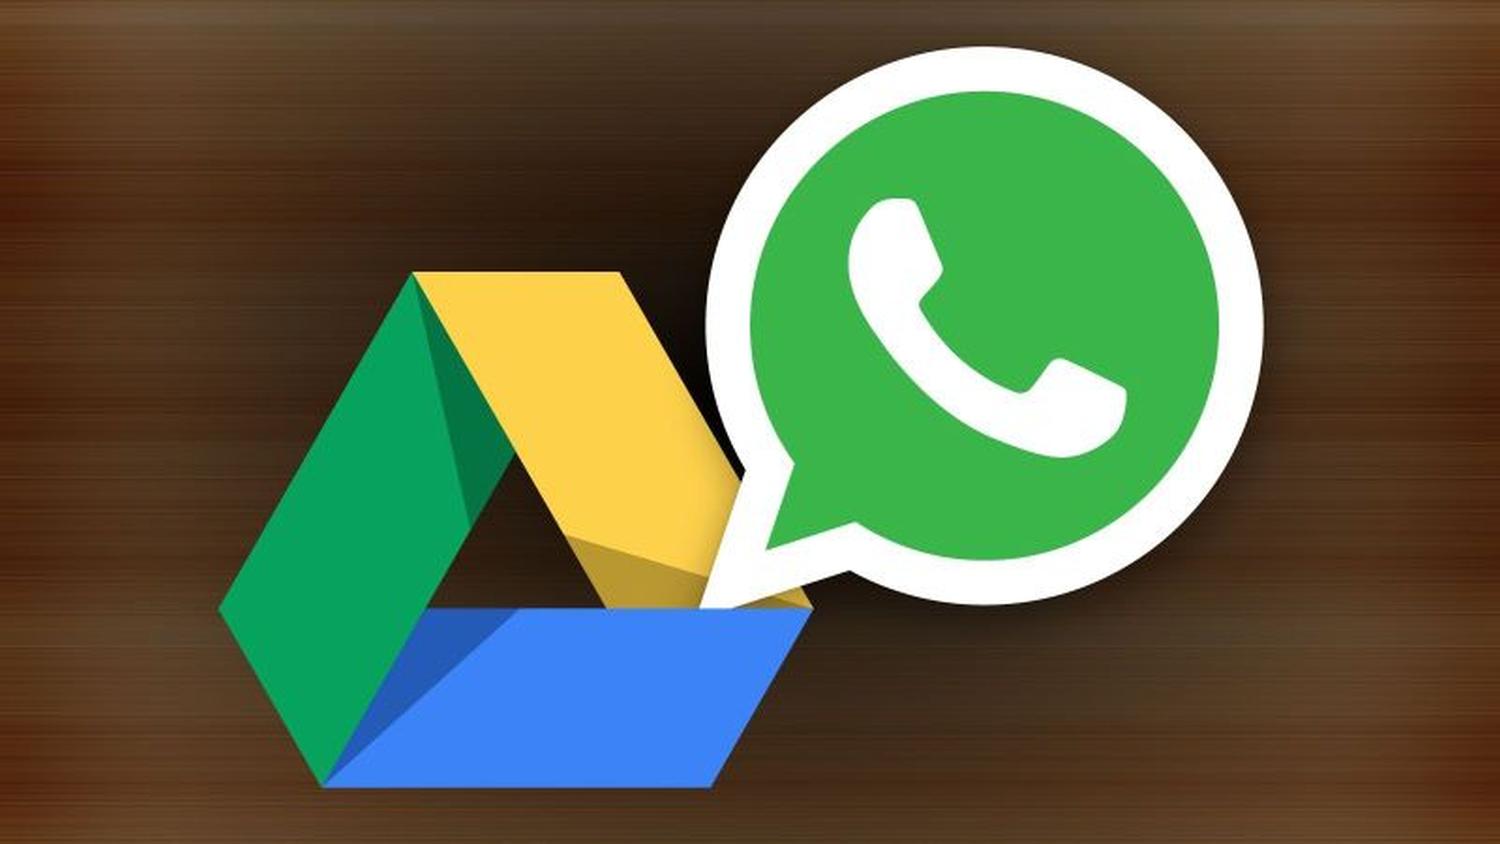 Warum kann WhatsApp nicht auf Google Konto zugreifen?